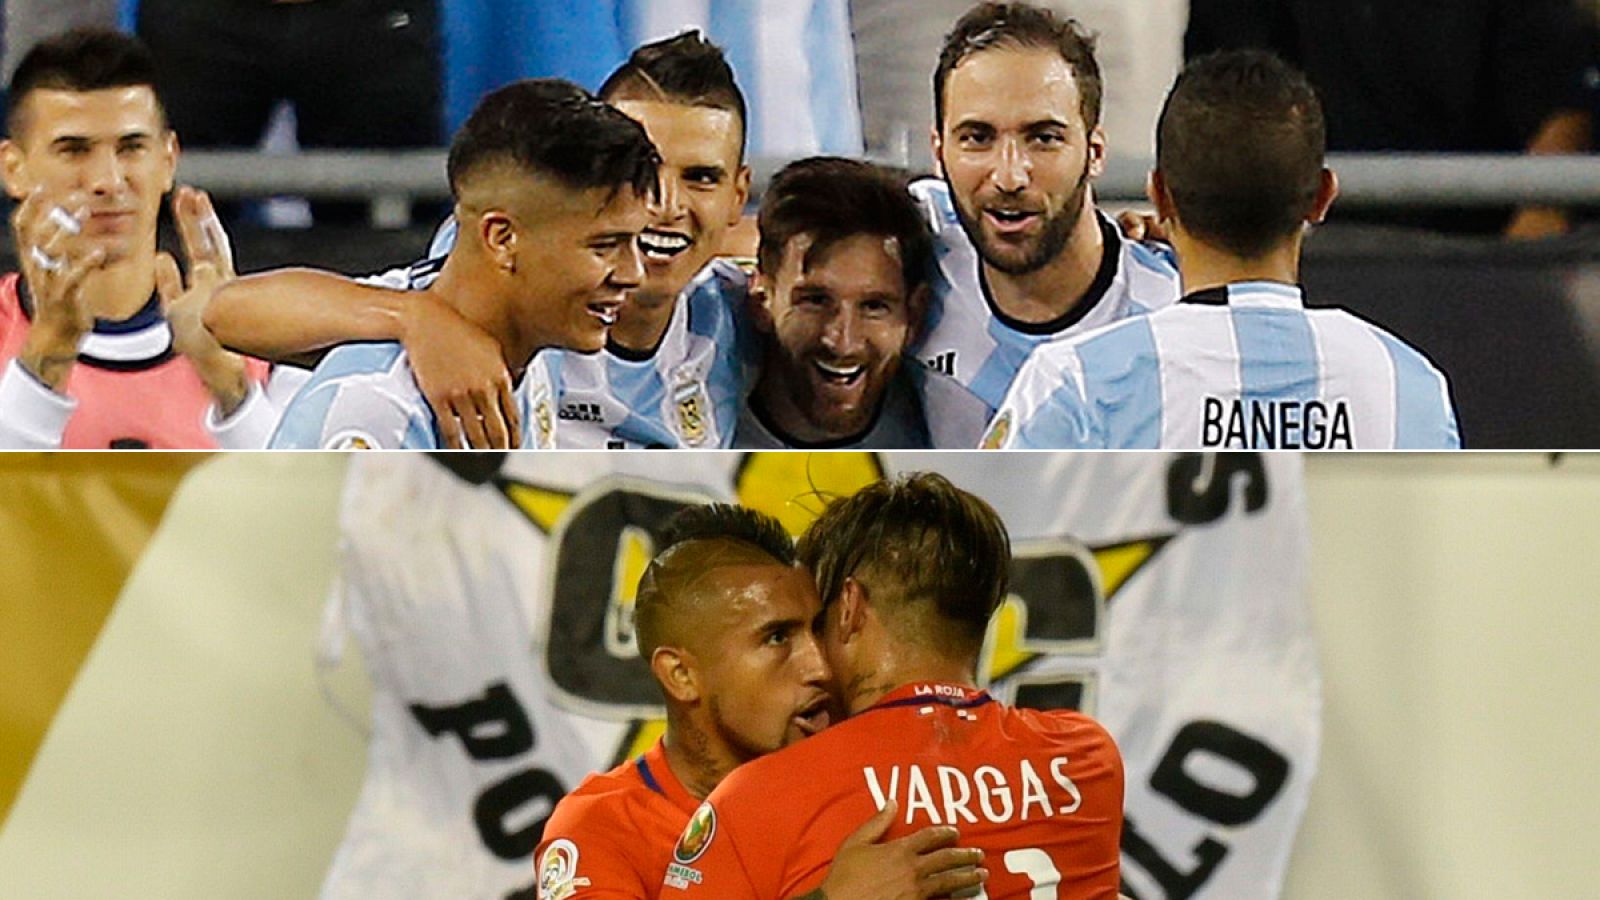 Los jugadores de Argentina (arriba) y los de la selección de Chile (abajo) celebra su pase a semifinales de la Copa América.